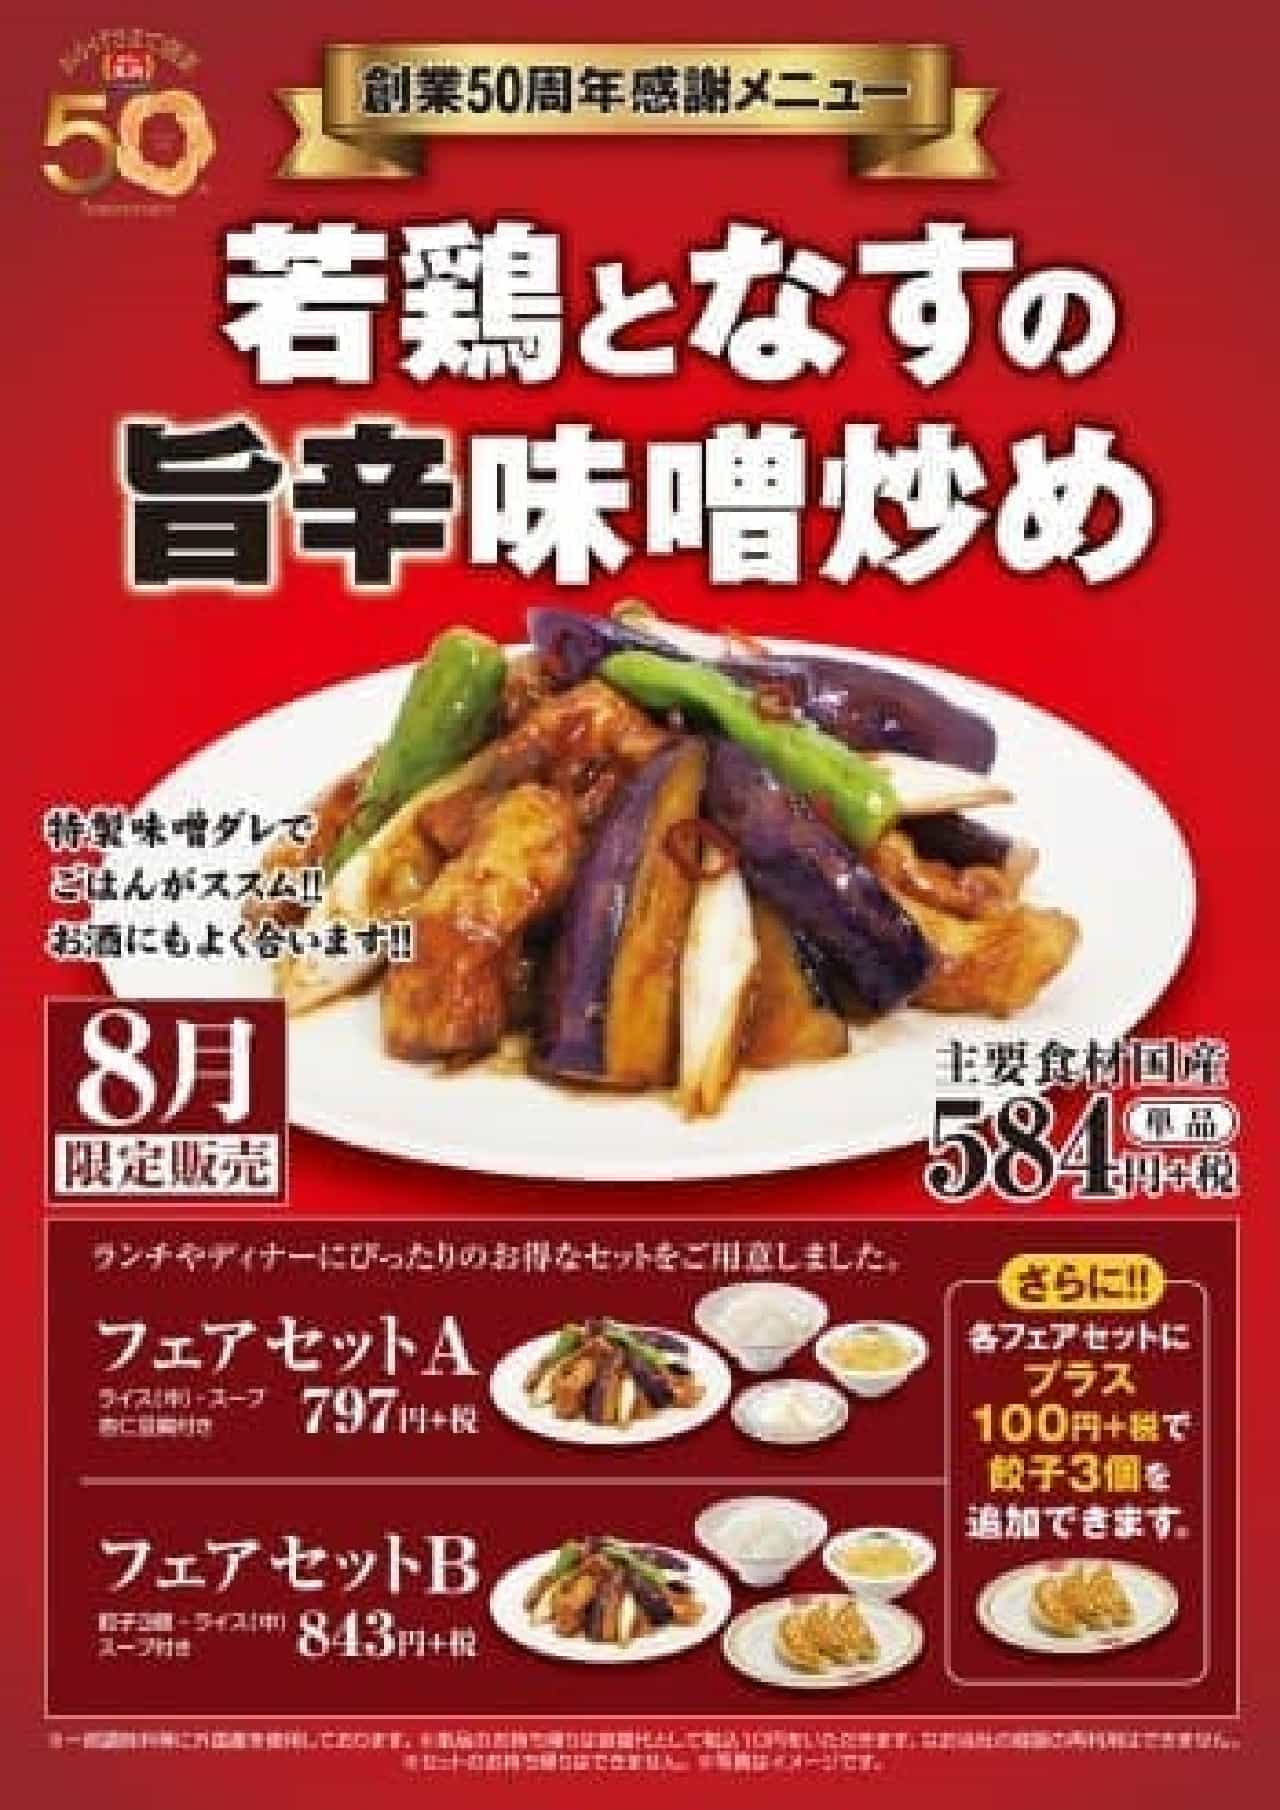 Gyoza no Ohsho "Stir-fried eggplant with spicy miso"